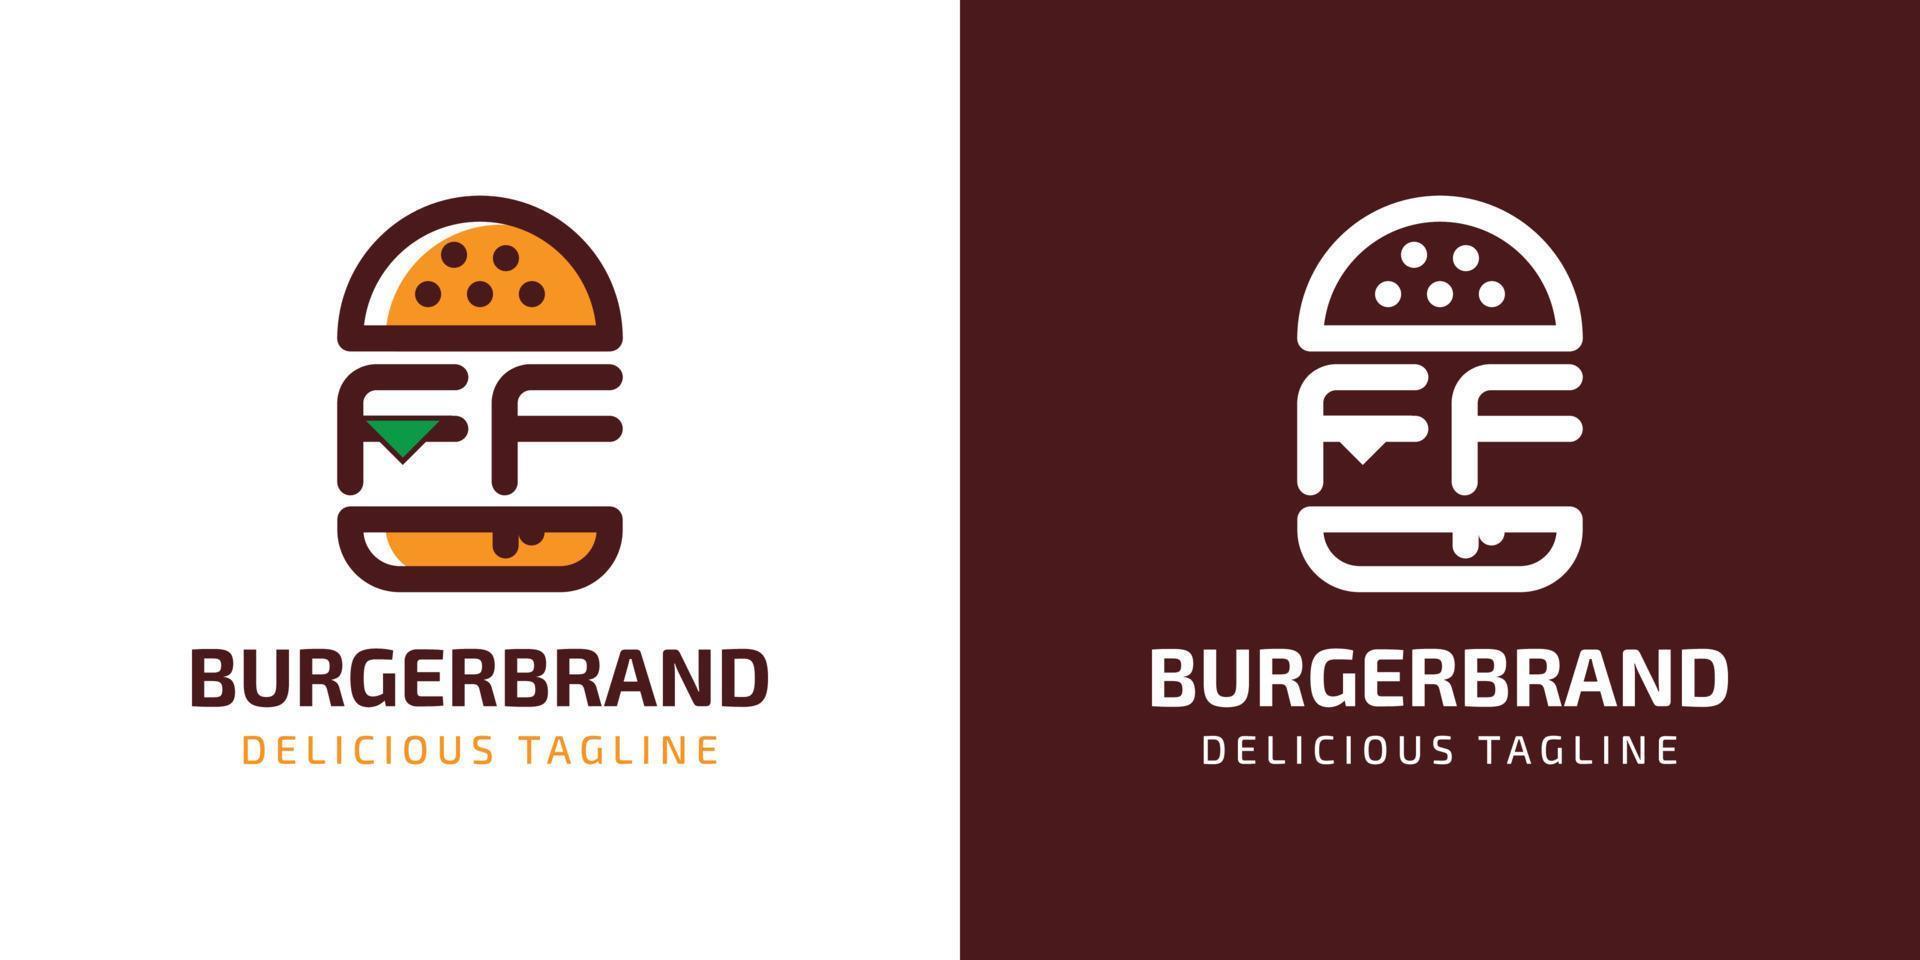 brev ff burger logotyp, lämplig för några företag relaterad till burger med f eller ff initialer. vektor